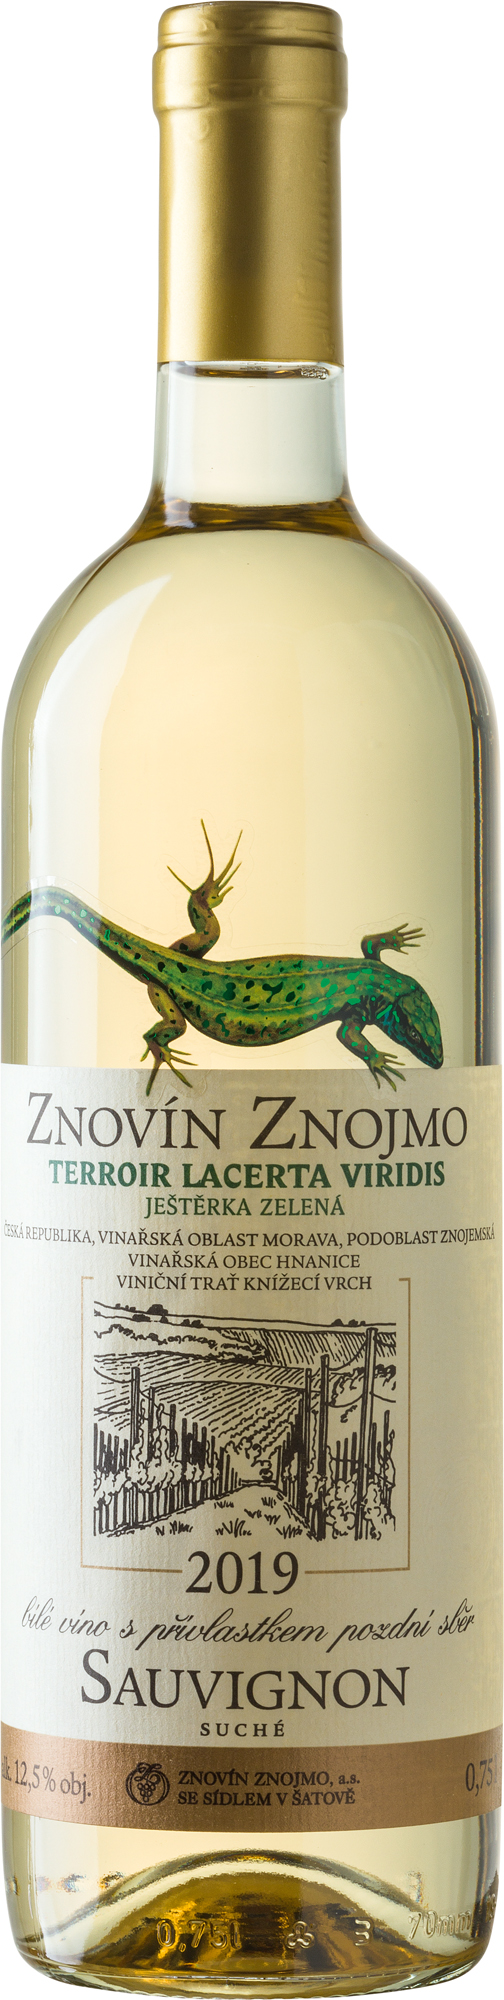 Sauvignon 2019 - Ještěrka zelená pozdní sběr, suché, obsah láhve 0,75 l